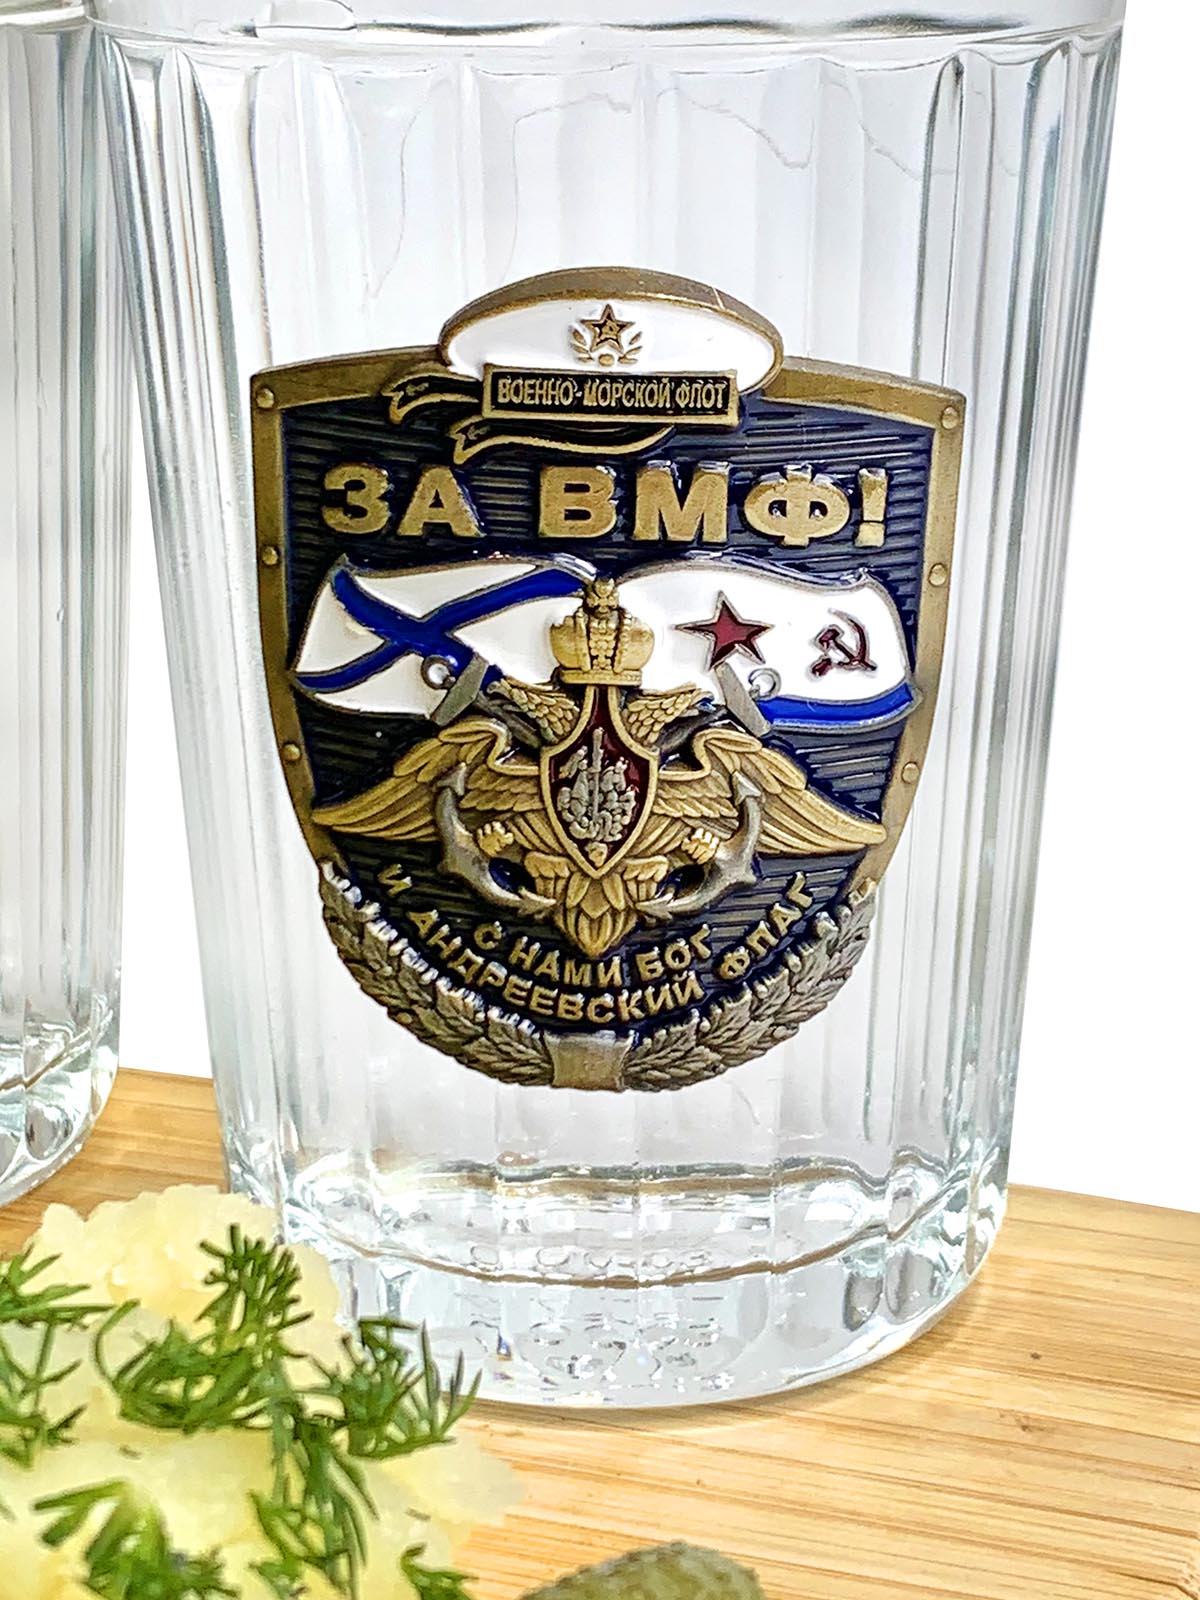 Стеклянные стаканы в дизайне Военно-морского флота 